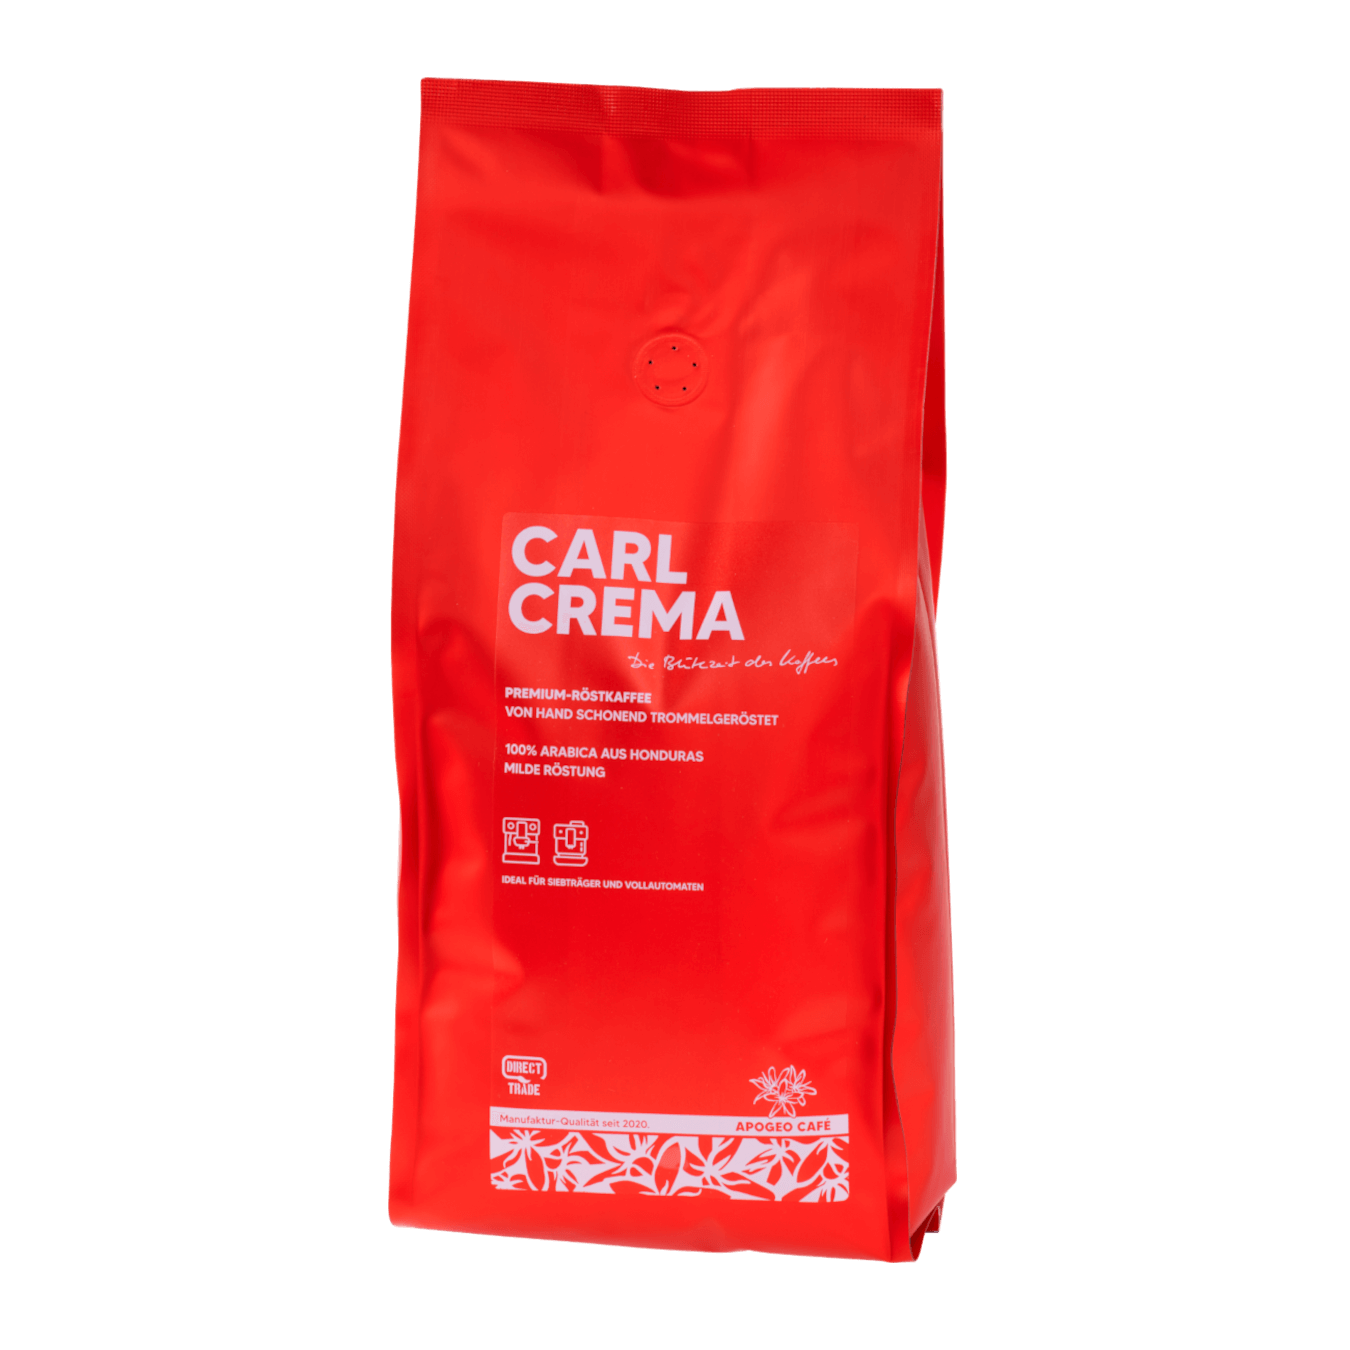 Genieße die Harmonie von Carl Crema – der Inbegriff von Premium-Kaffee. Entdecke einen Kaffee, der deinen Ansprüchen gerecht wird